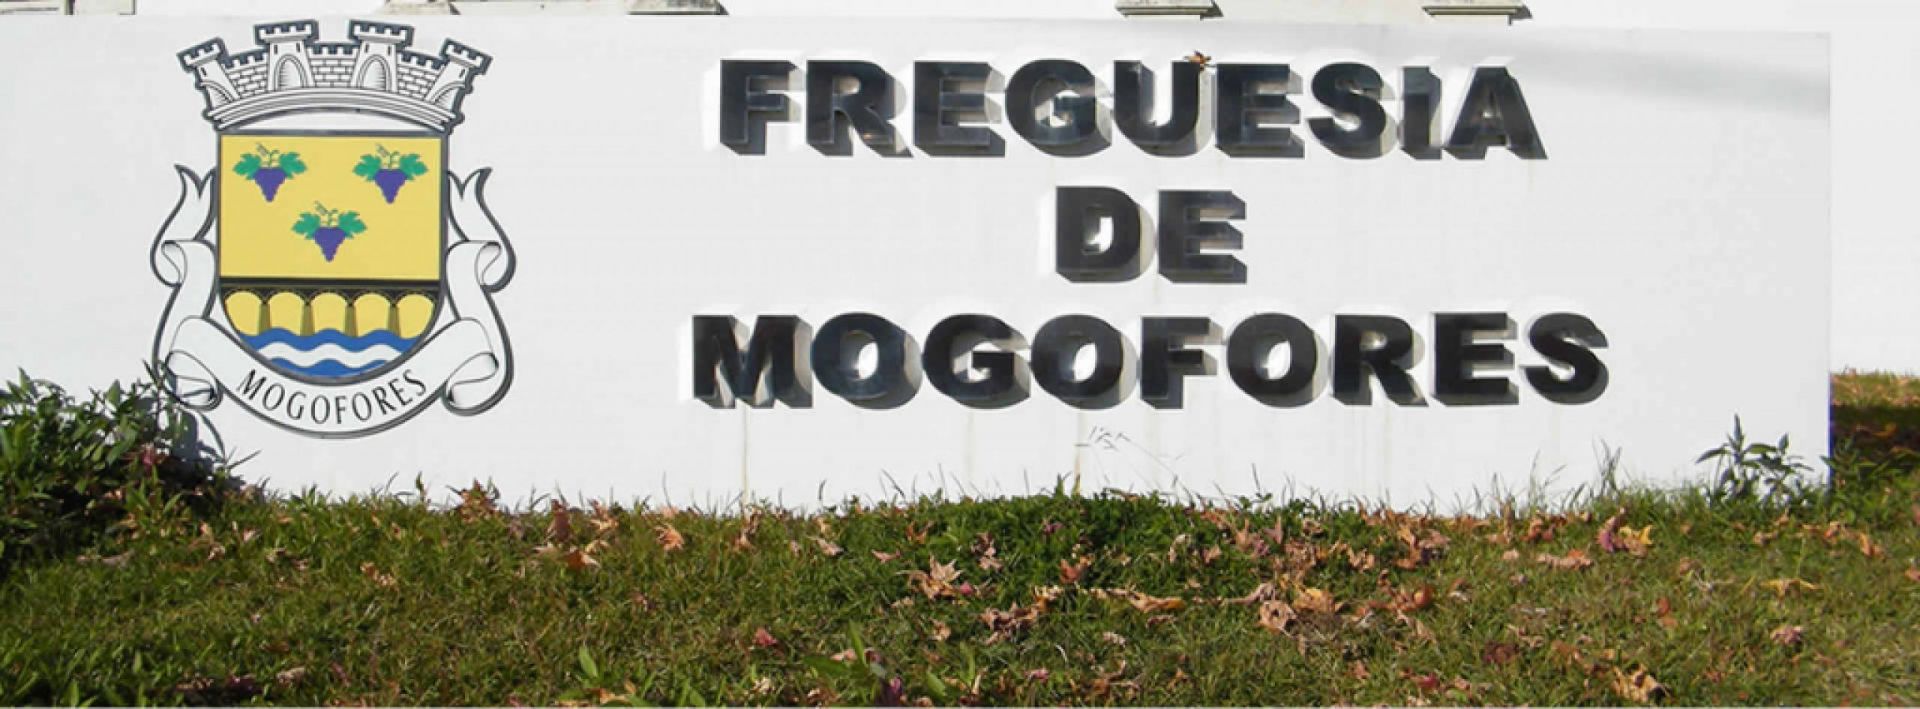 UF Arcos e Mogofores